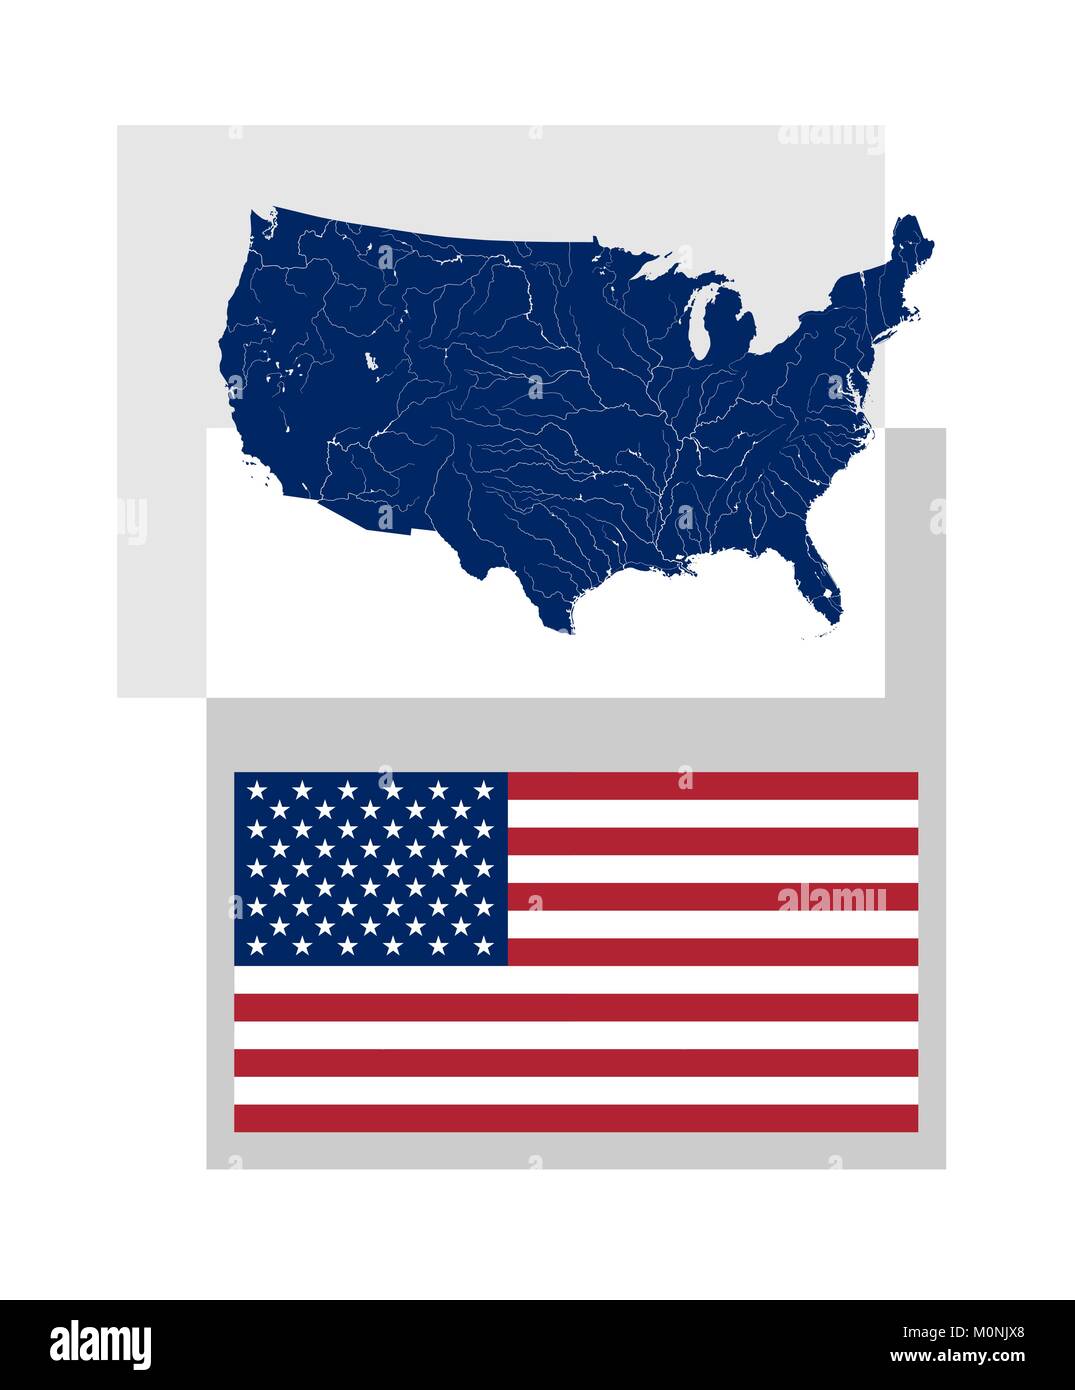 Carte des États-Unis d'Amérique avec les rivières et les lacs et l'étoile du drapeau national et de l'USA. Une bonne conception et de couleurs. Les rivières sont affichées.. Illustration de Vecteur